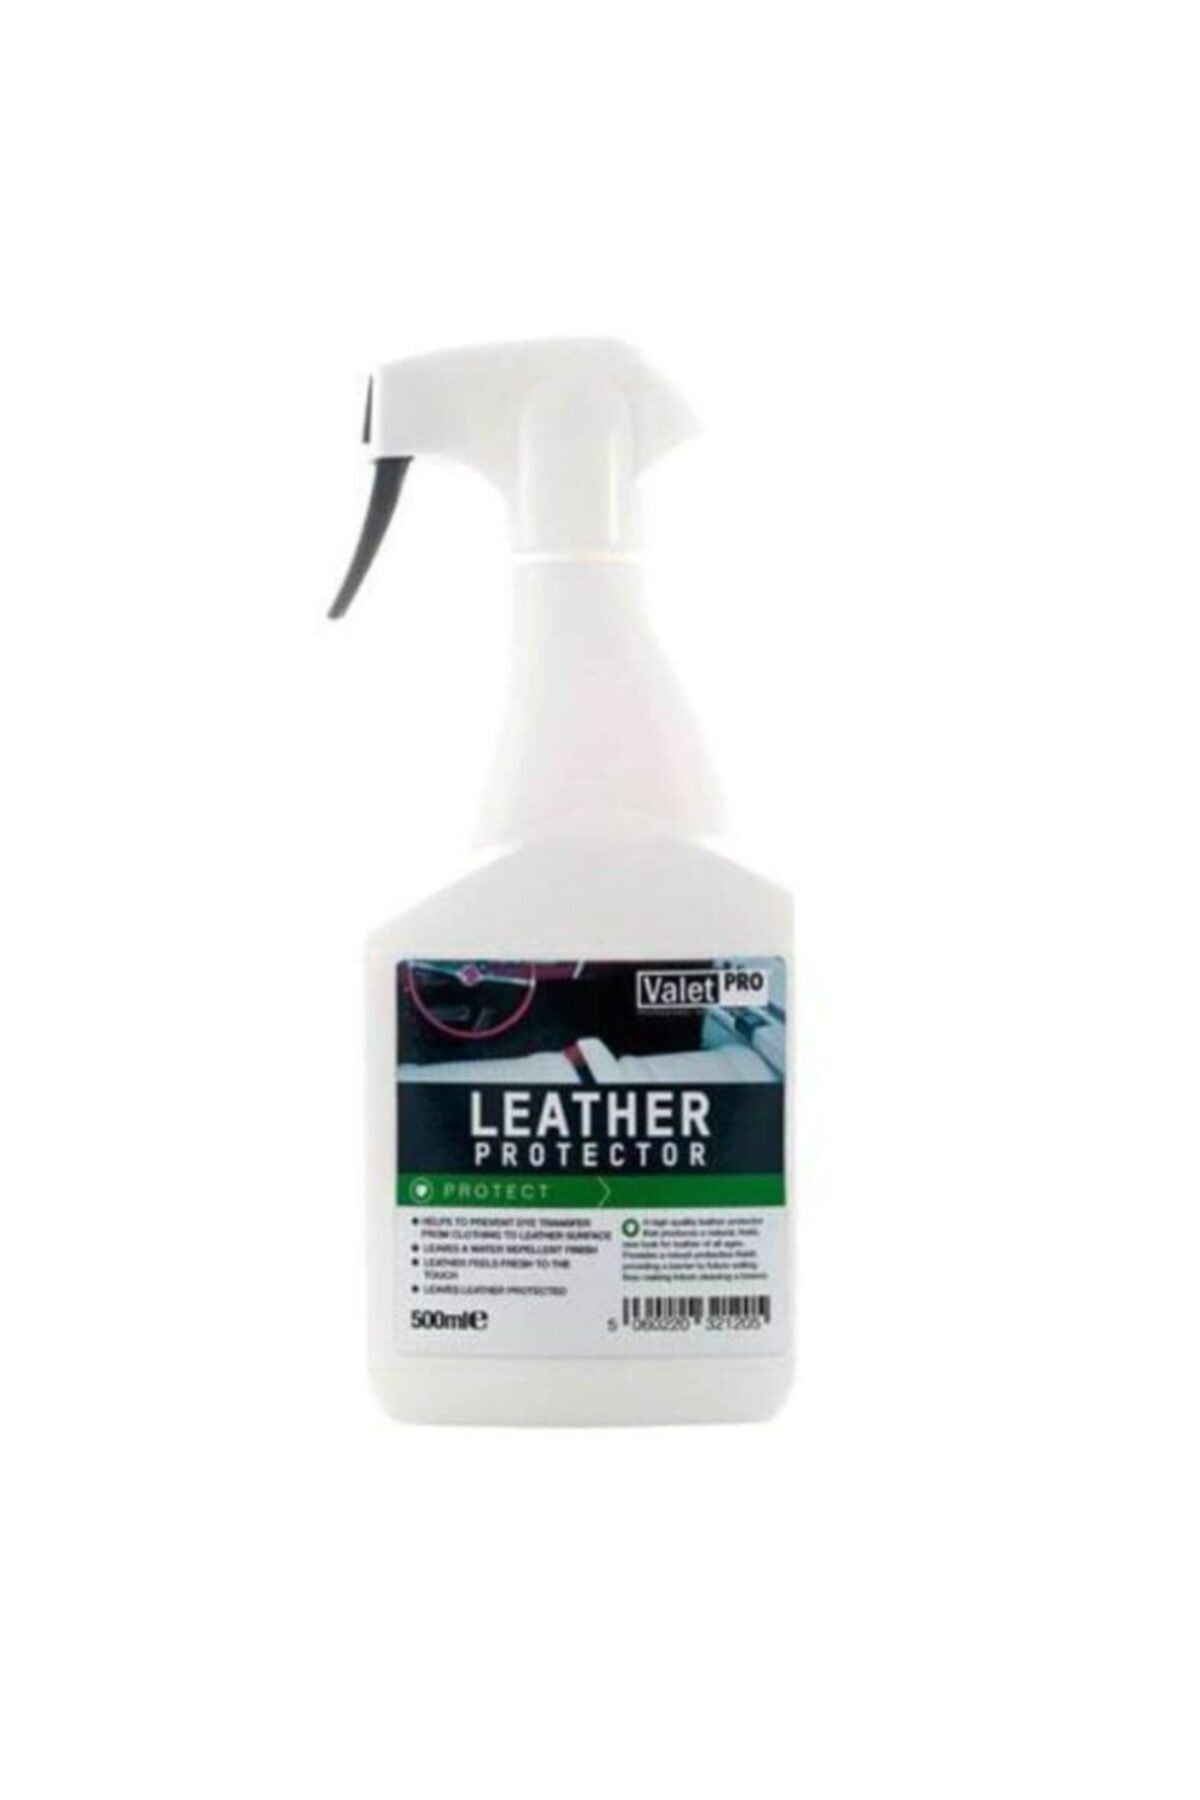 Valet Pro Leather Protector Deri Koruma Spreyi 500ml